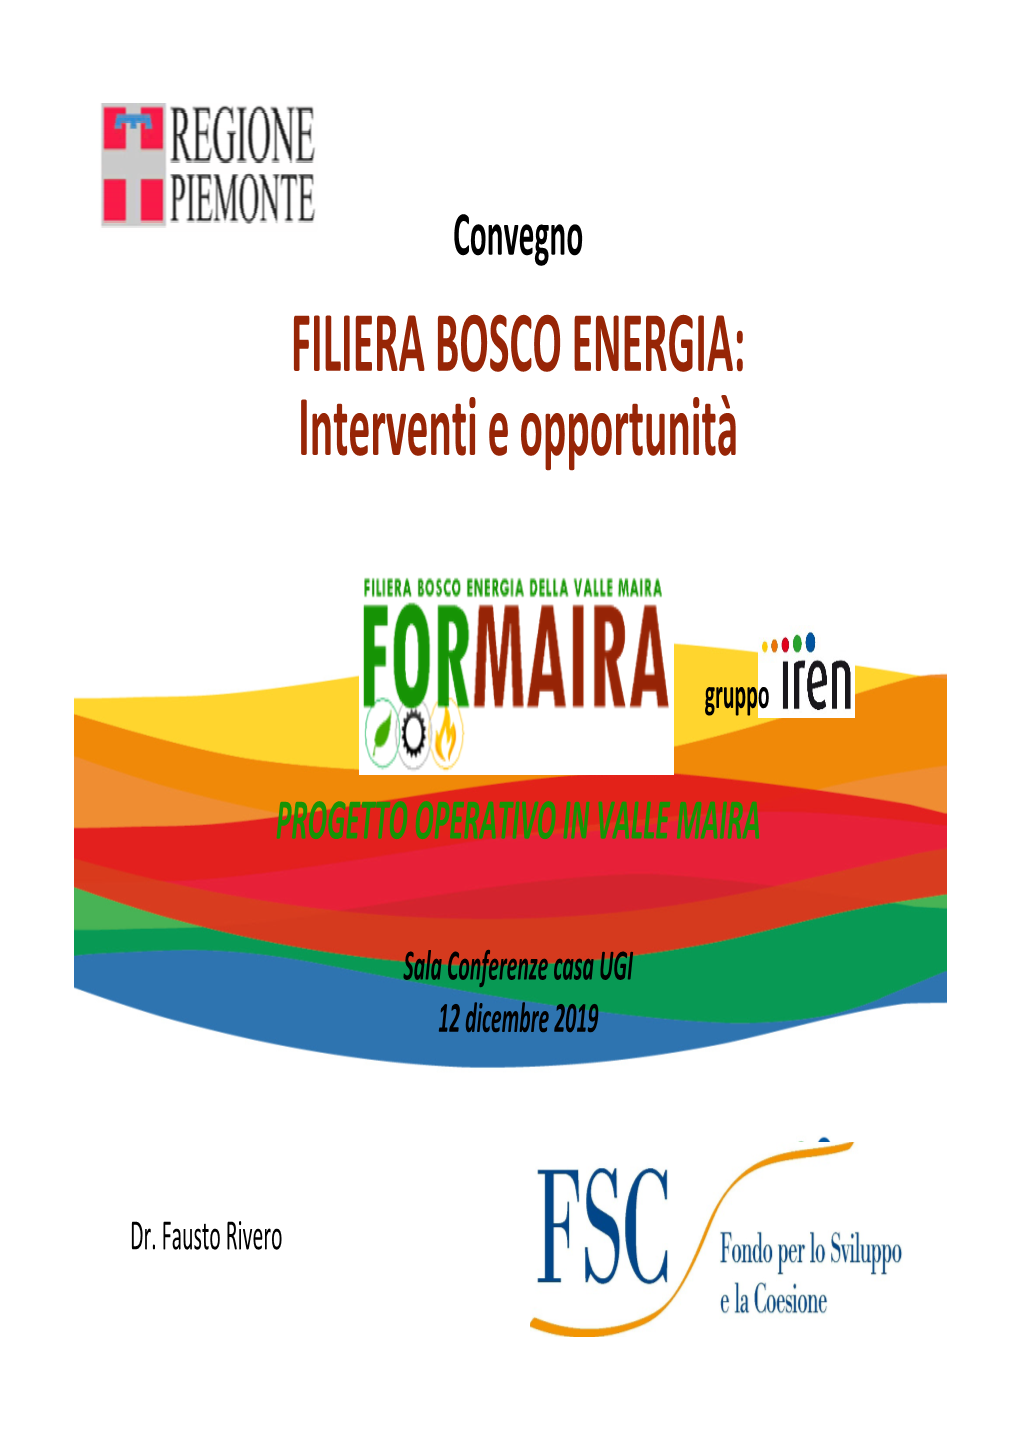 FORMAIRA: Progetto Operativo in Valle Maira. F